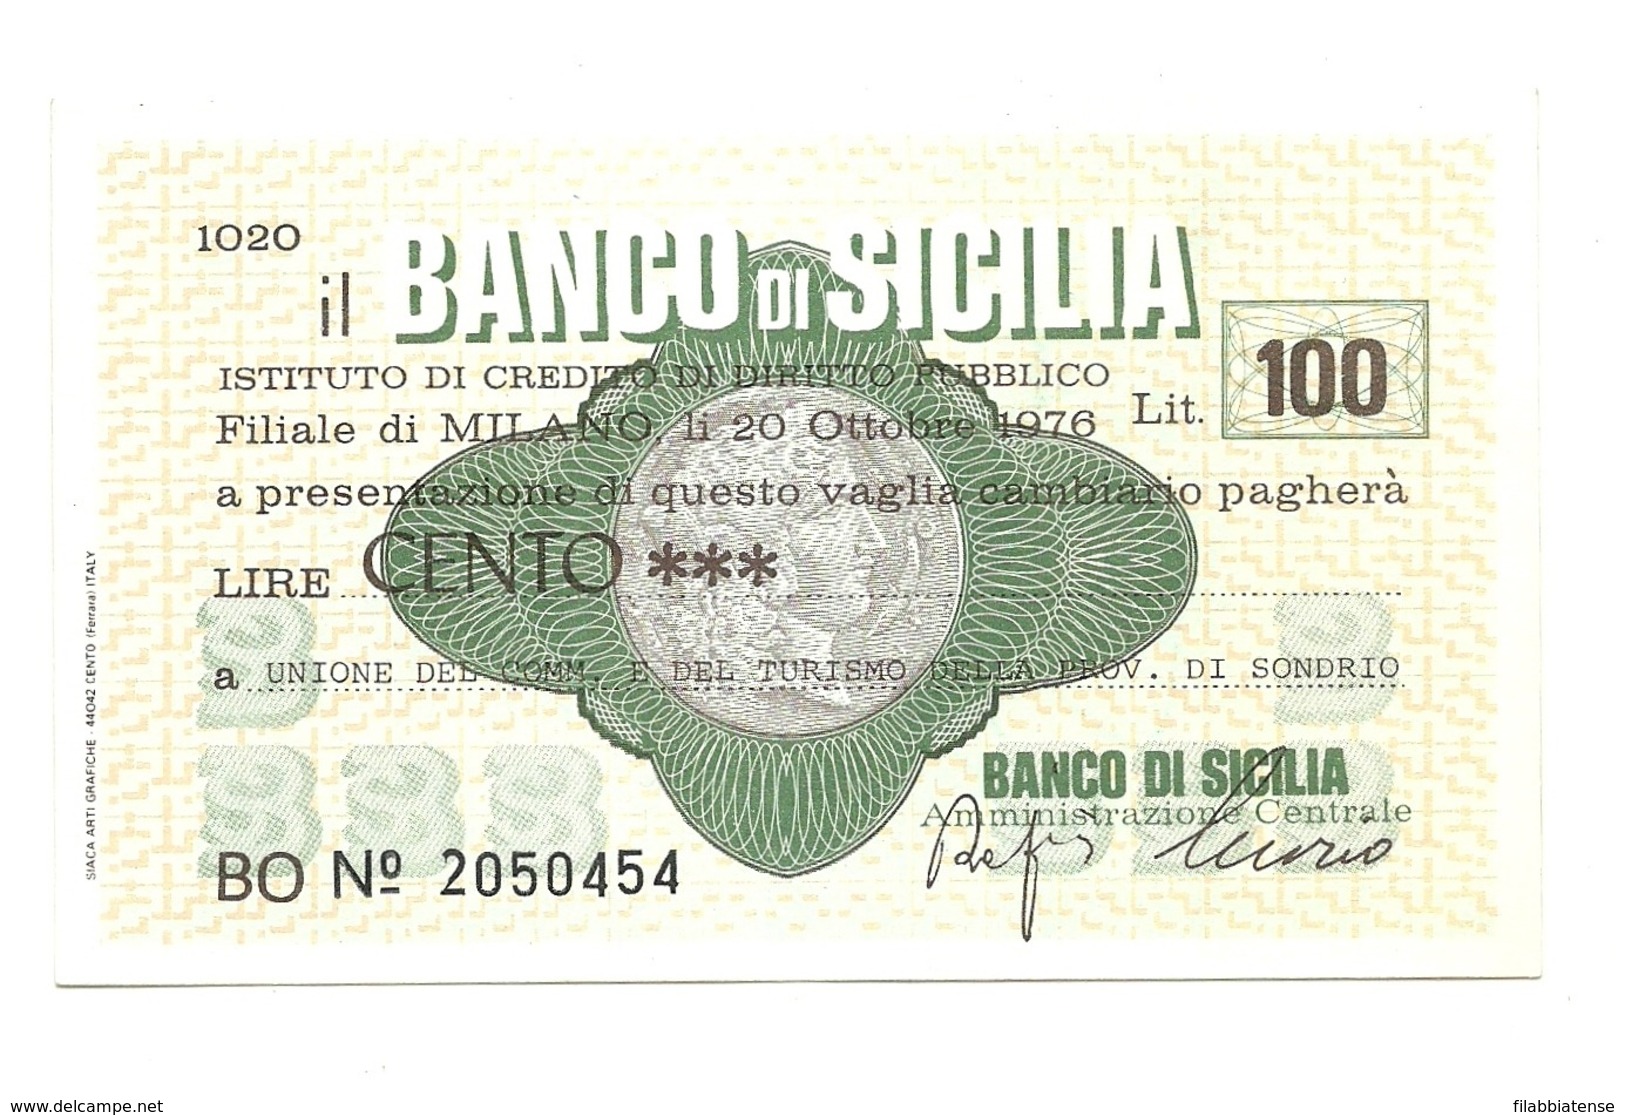 1976 - Italia - Banco Di Sicilia - Unione Del Commercio E Del Turismo Della Provincia Di Sondrio ---- - [10] Cheques En Mini-cheques